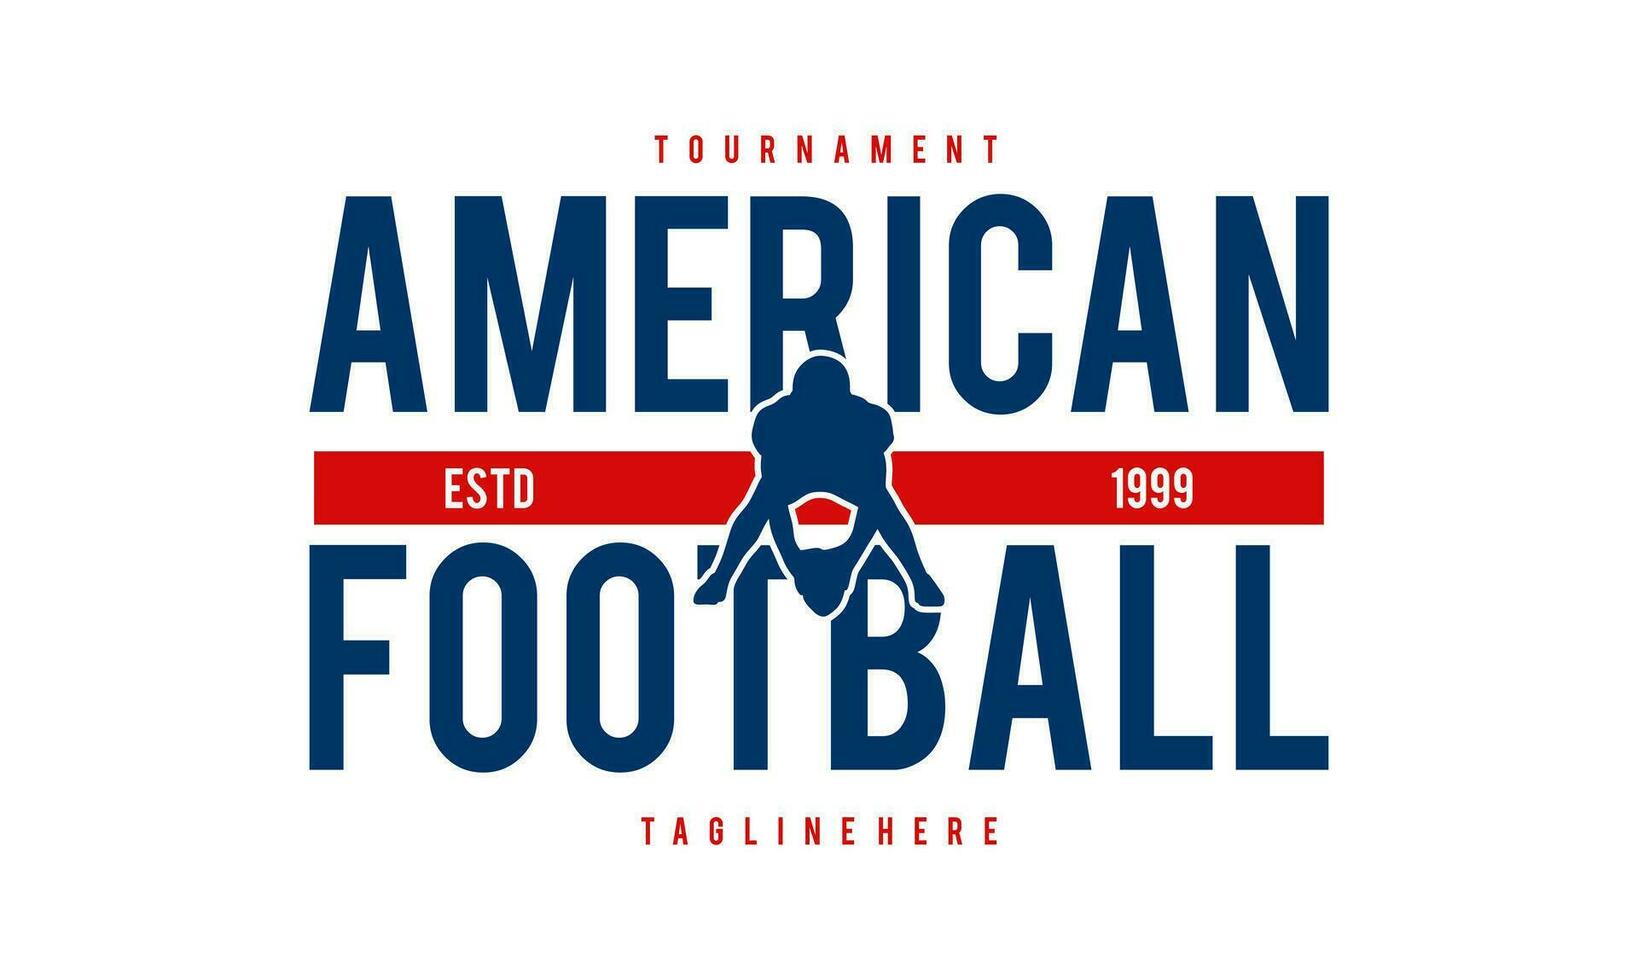 americano fútbol americano jugador silueta logo americano fútbol americano torneo logo vector